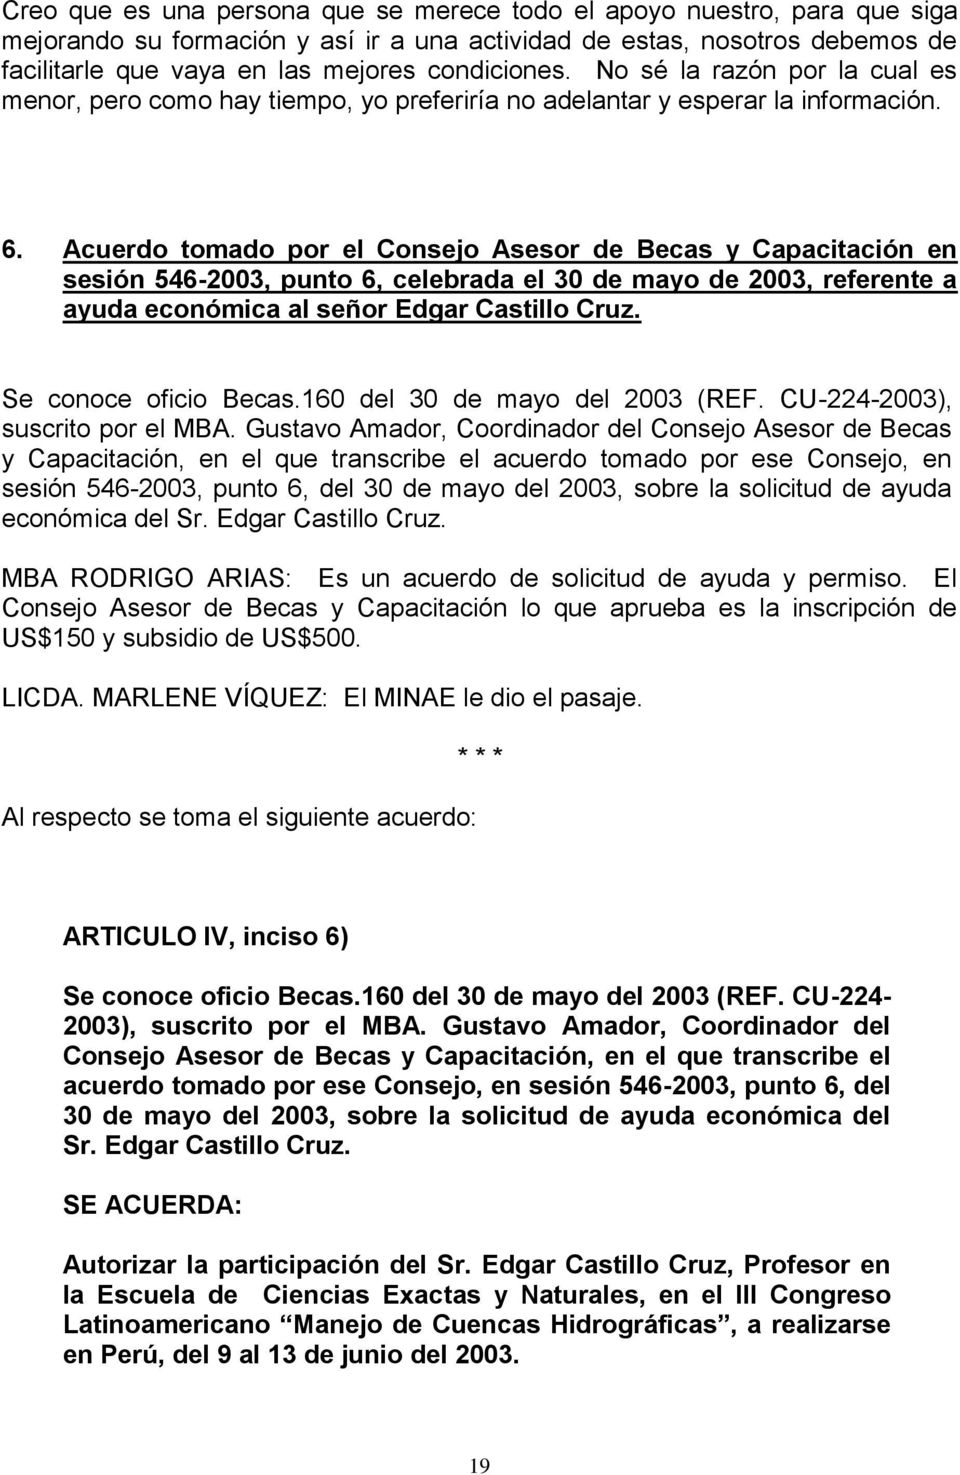 Acuerdo tomado por el Consejo Asesor de Becas y Capacitación en sesión 546-2003, punto 6, celebrada el 30 de mayo de 2003, referente a ayuda económica al señor Edgar Castillo Cruz.